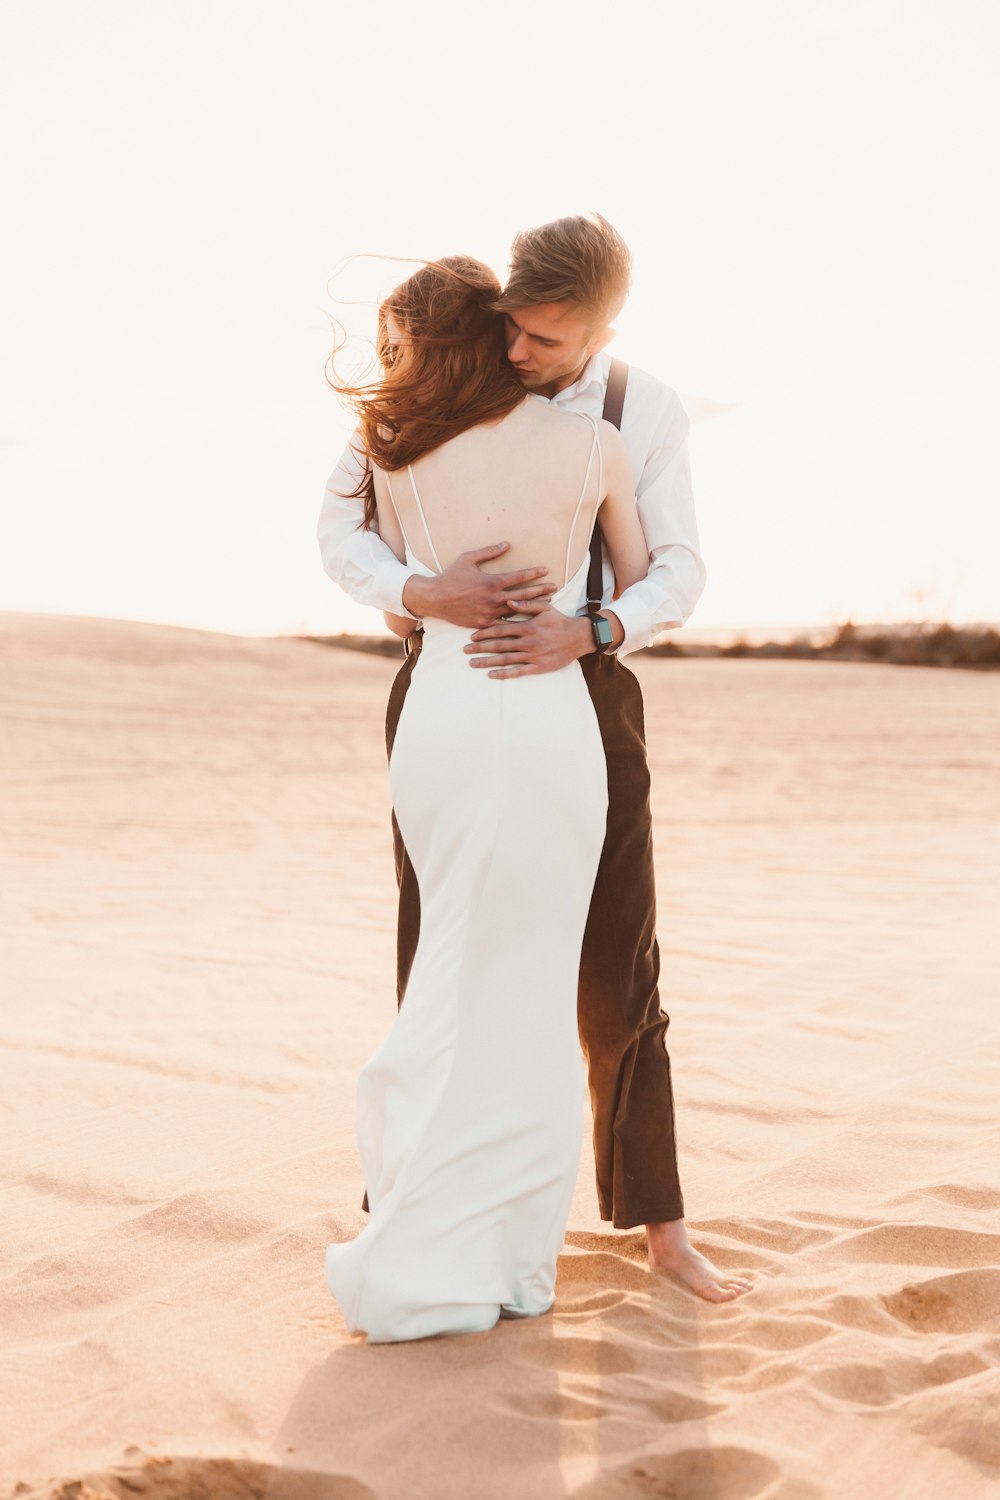 사막 모래 위에서 껴안고 있는 커플